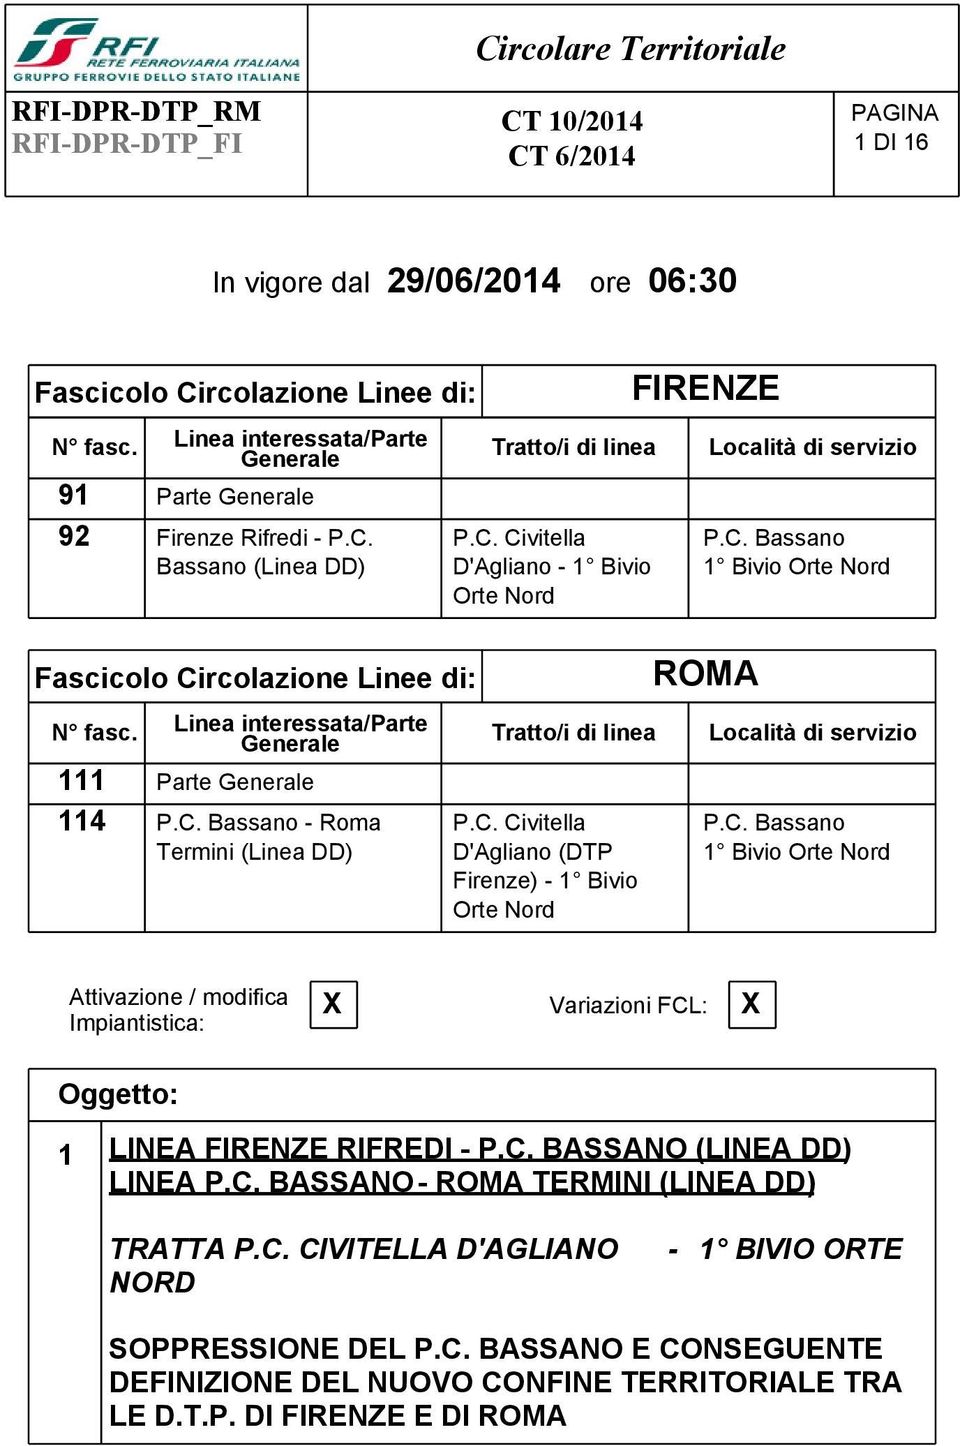 C. Civitella D'Agliano - 1 Bivio Orte Nord Tratto/i di linea P.C. Civitella D'Agliano (DTP Firenze) - 1 Bivio Orte Nord FIRENZE Località di servizio P.C. Bassano 1 Bivio Orte Nord ROMA Località di servizio P.